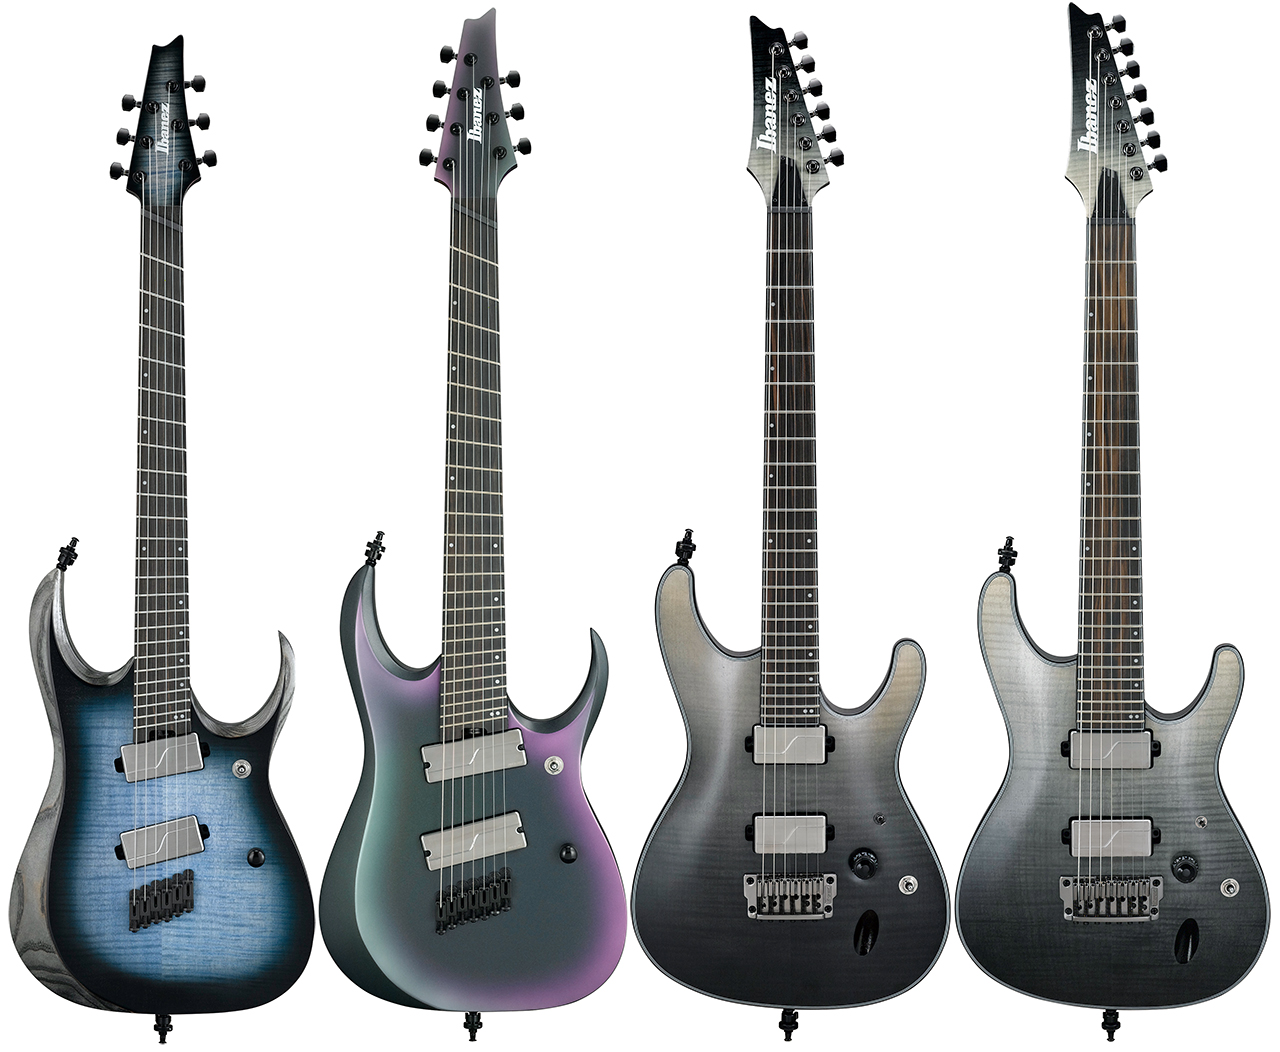 【Ibanez】アイバニーズのAXION LABELから、Thinボディ・ギターのパイオニア”S”を含む新たなモデルが全4種登場！ | こちら